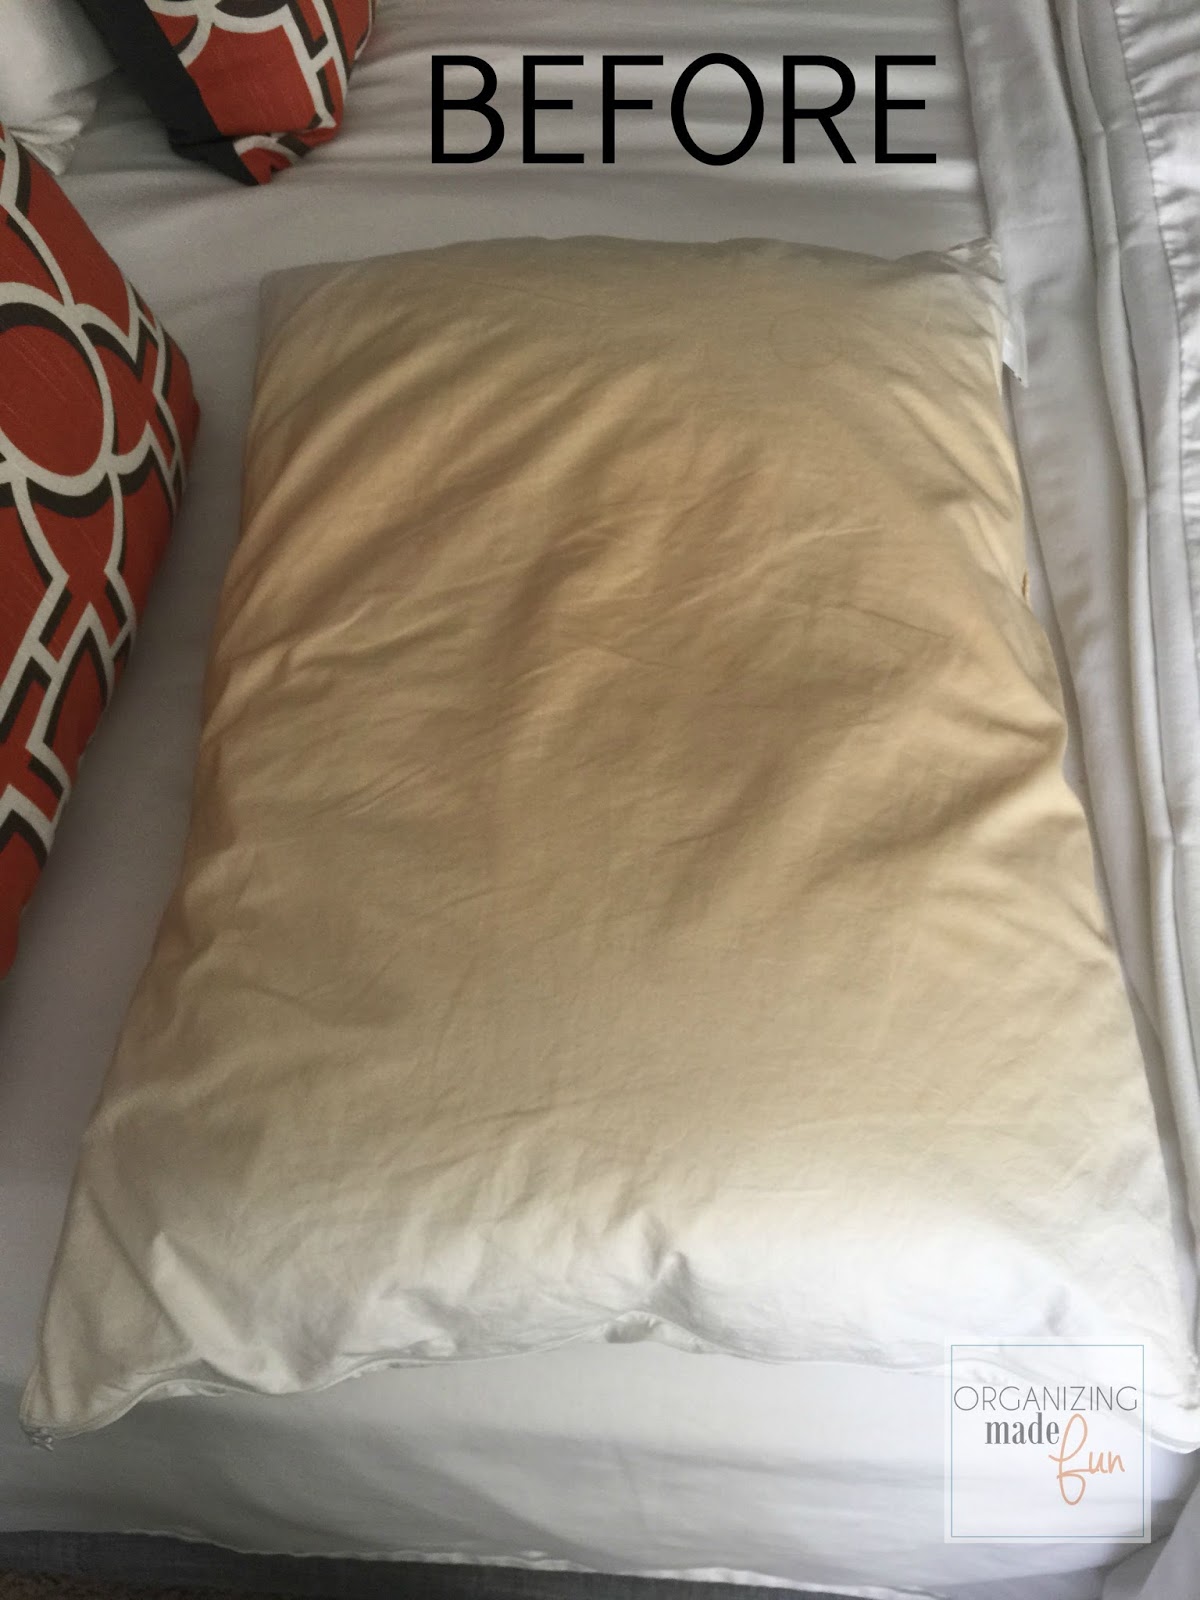 Can You Bleach Pillows?